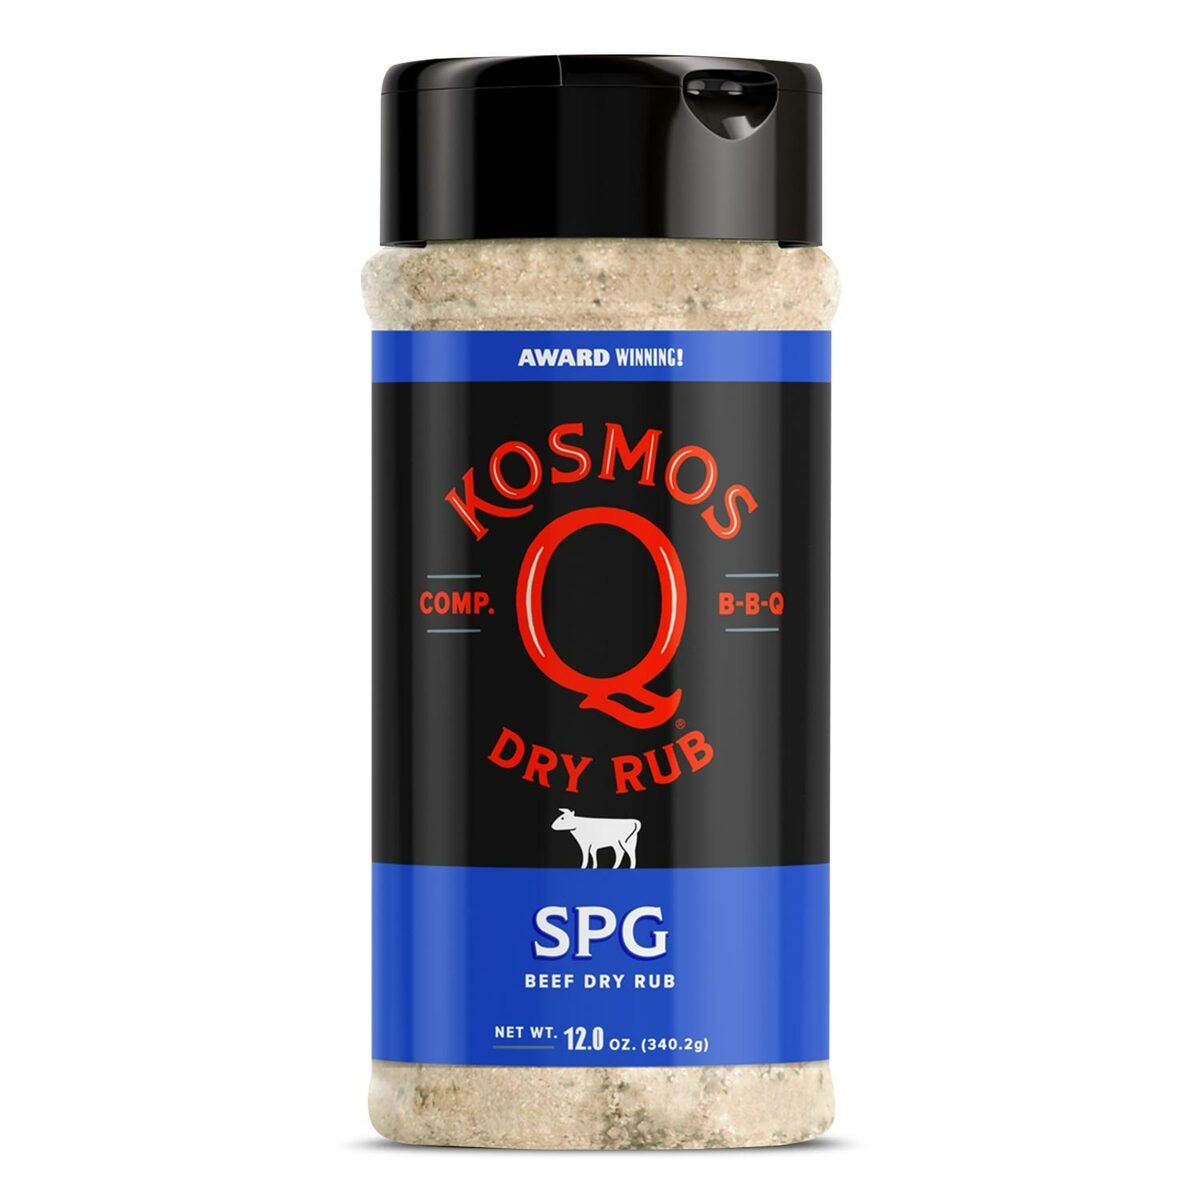 Kosmos Q Dry Rub, Beef, SPG - 12.0 oz